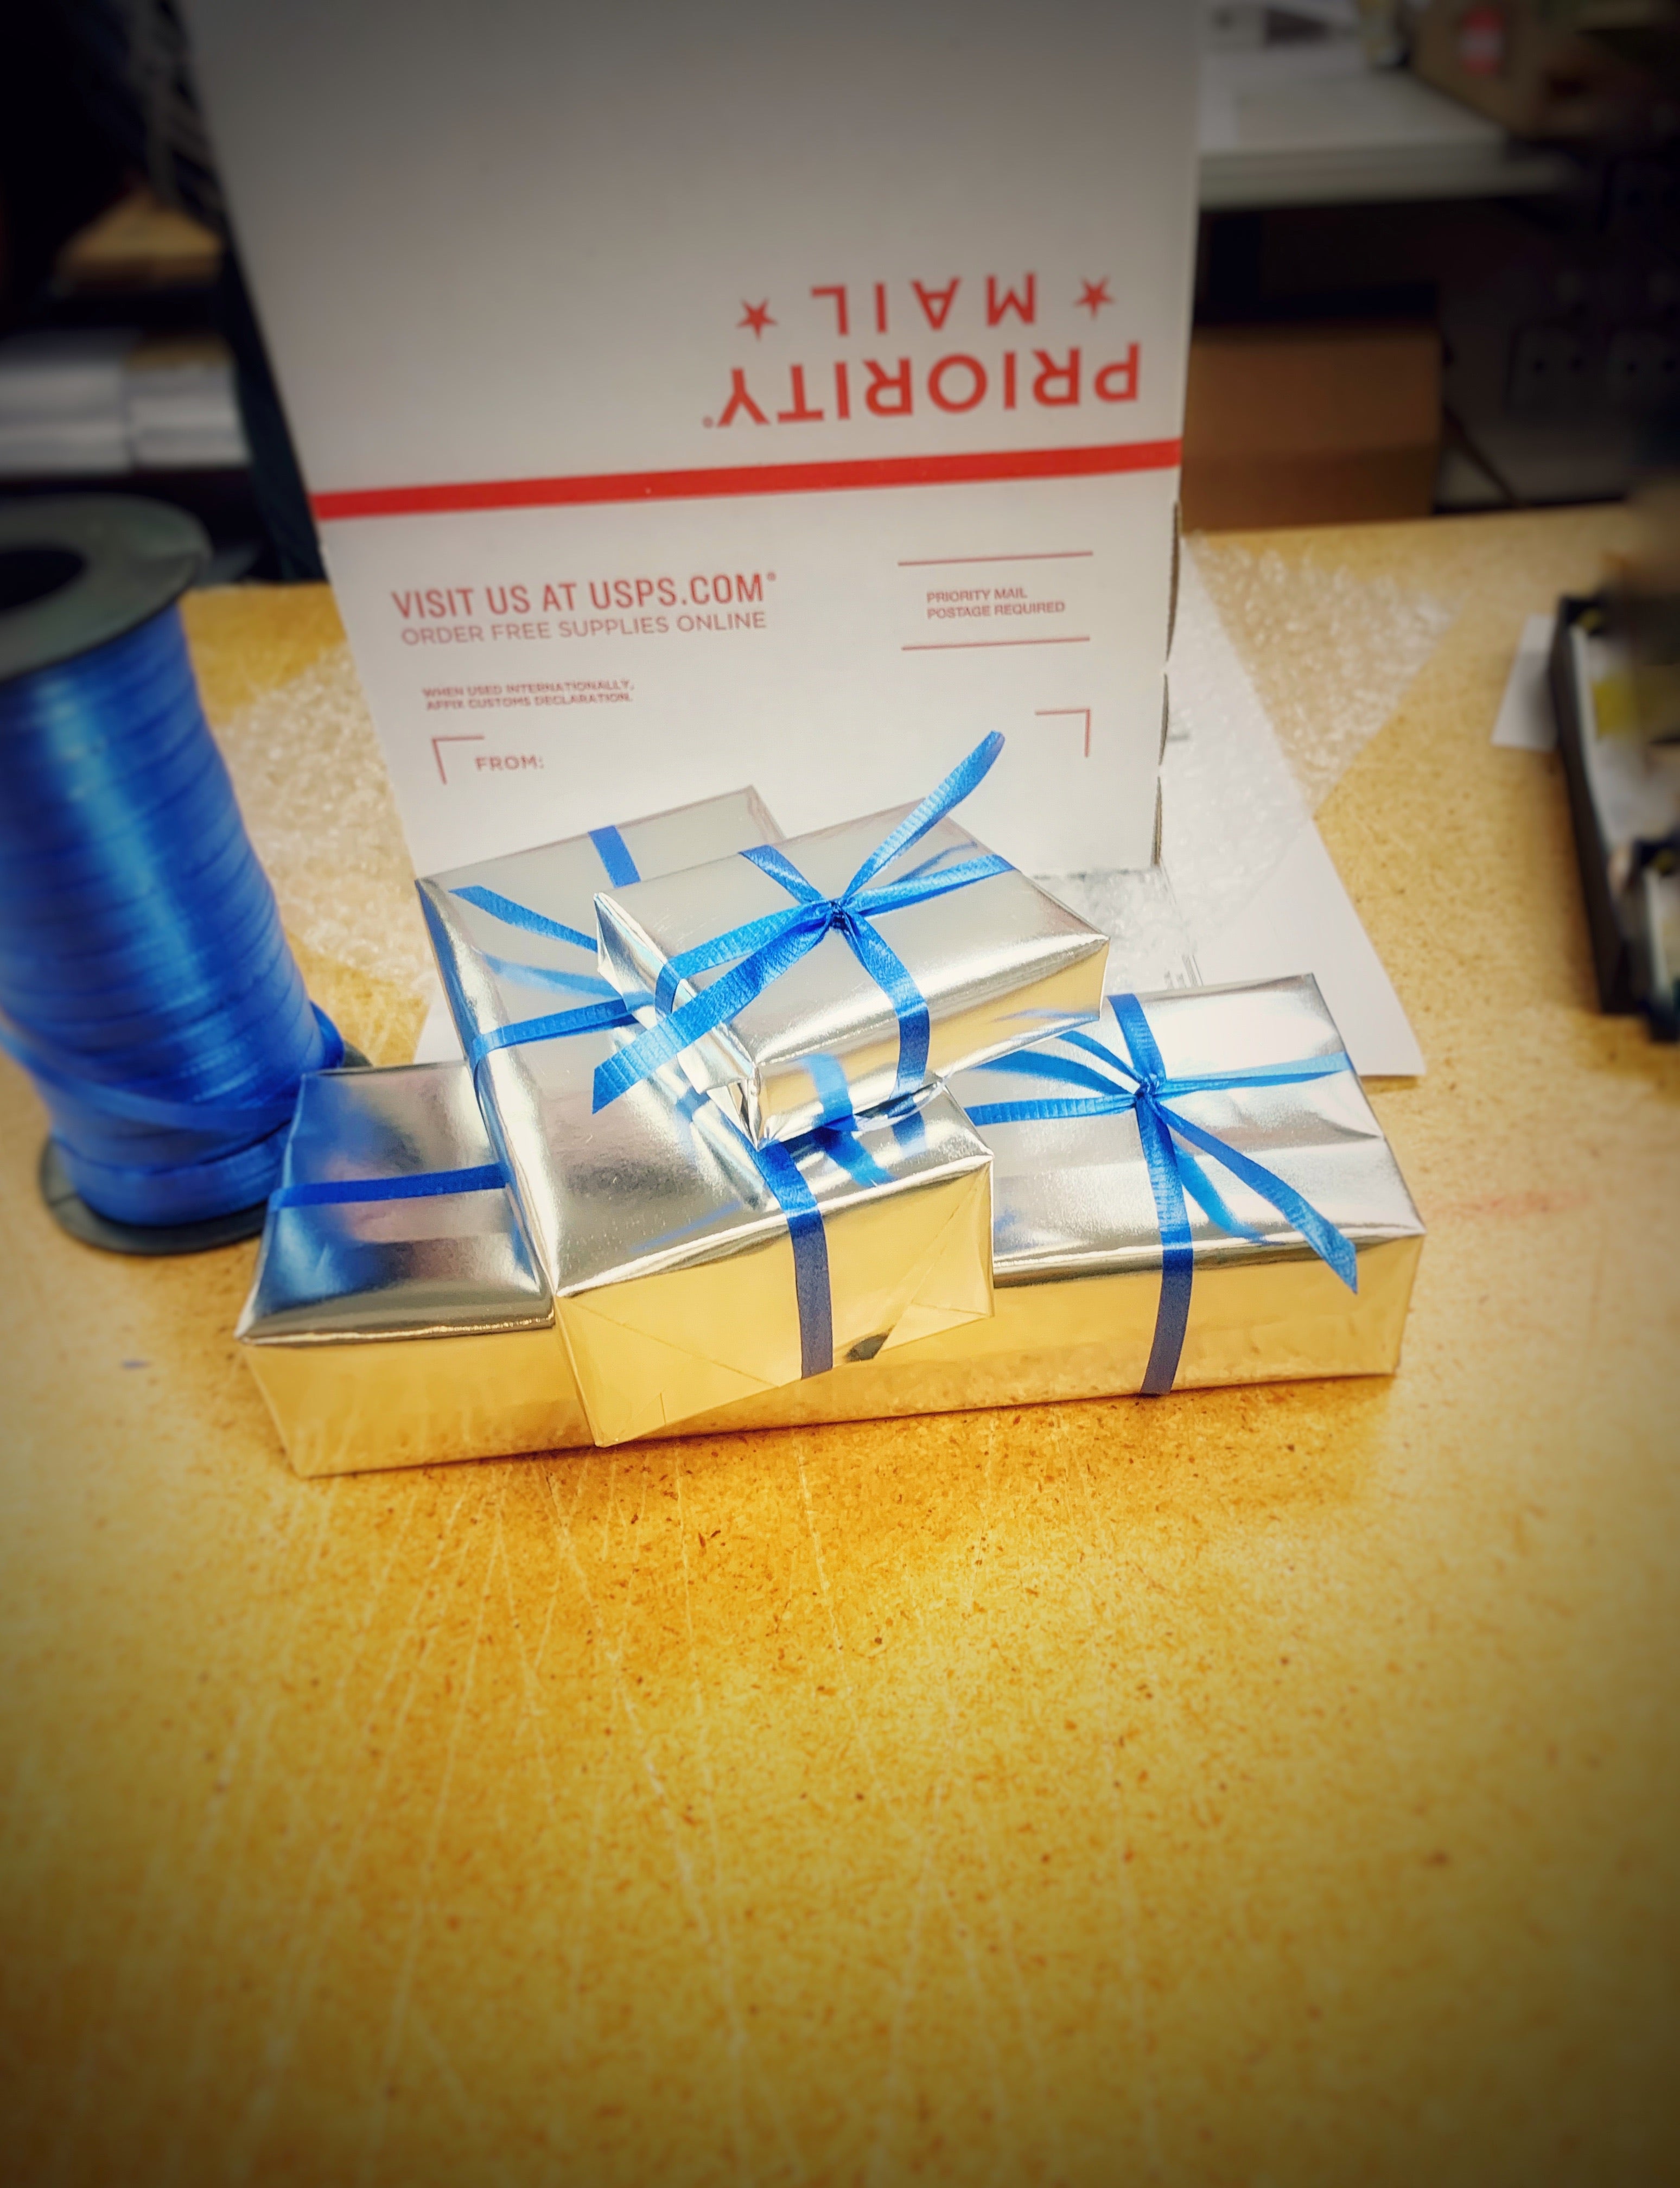 Gift Wrap-Pen Boutique Ltd